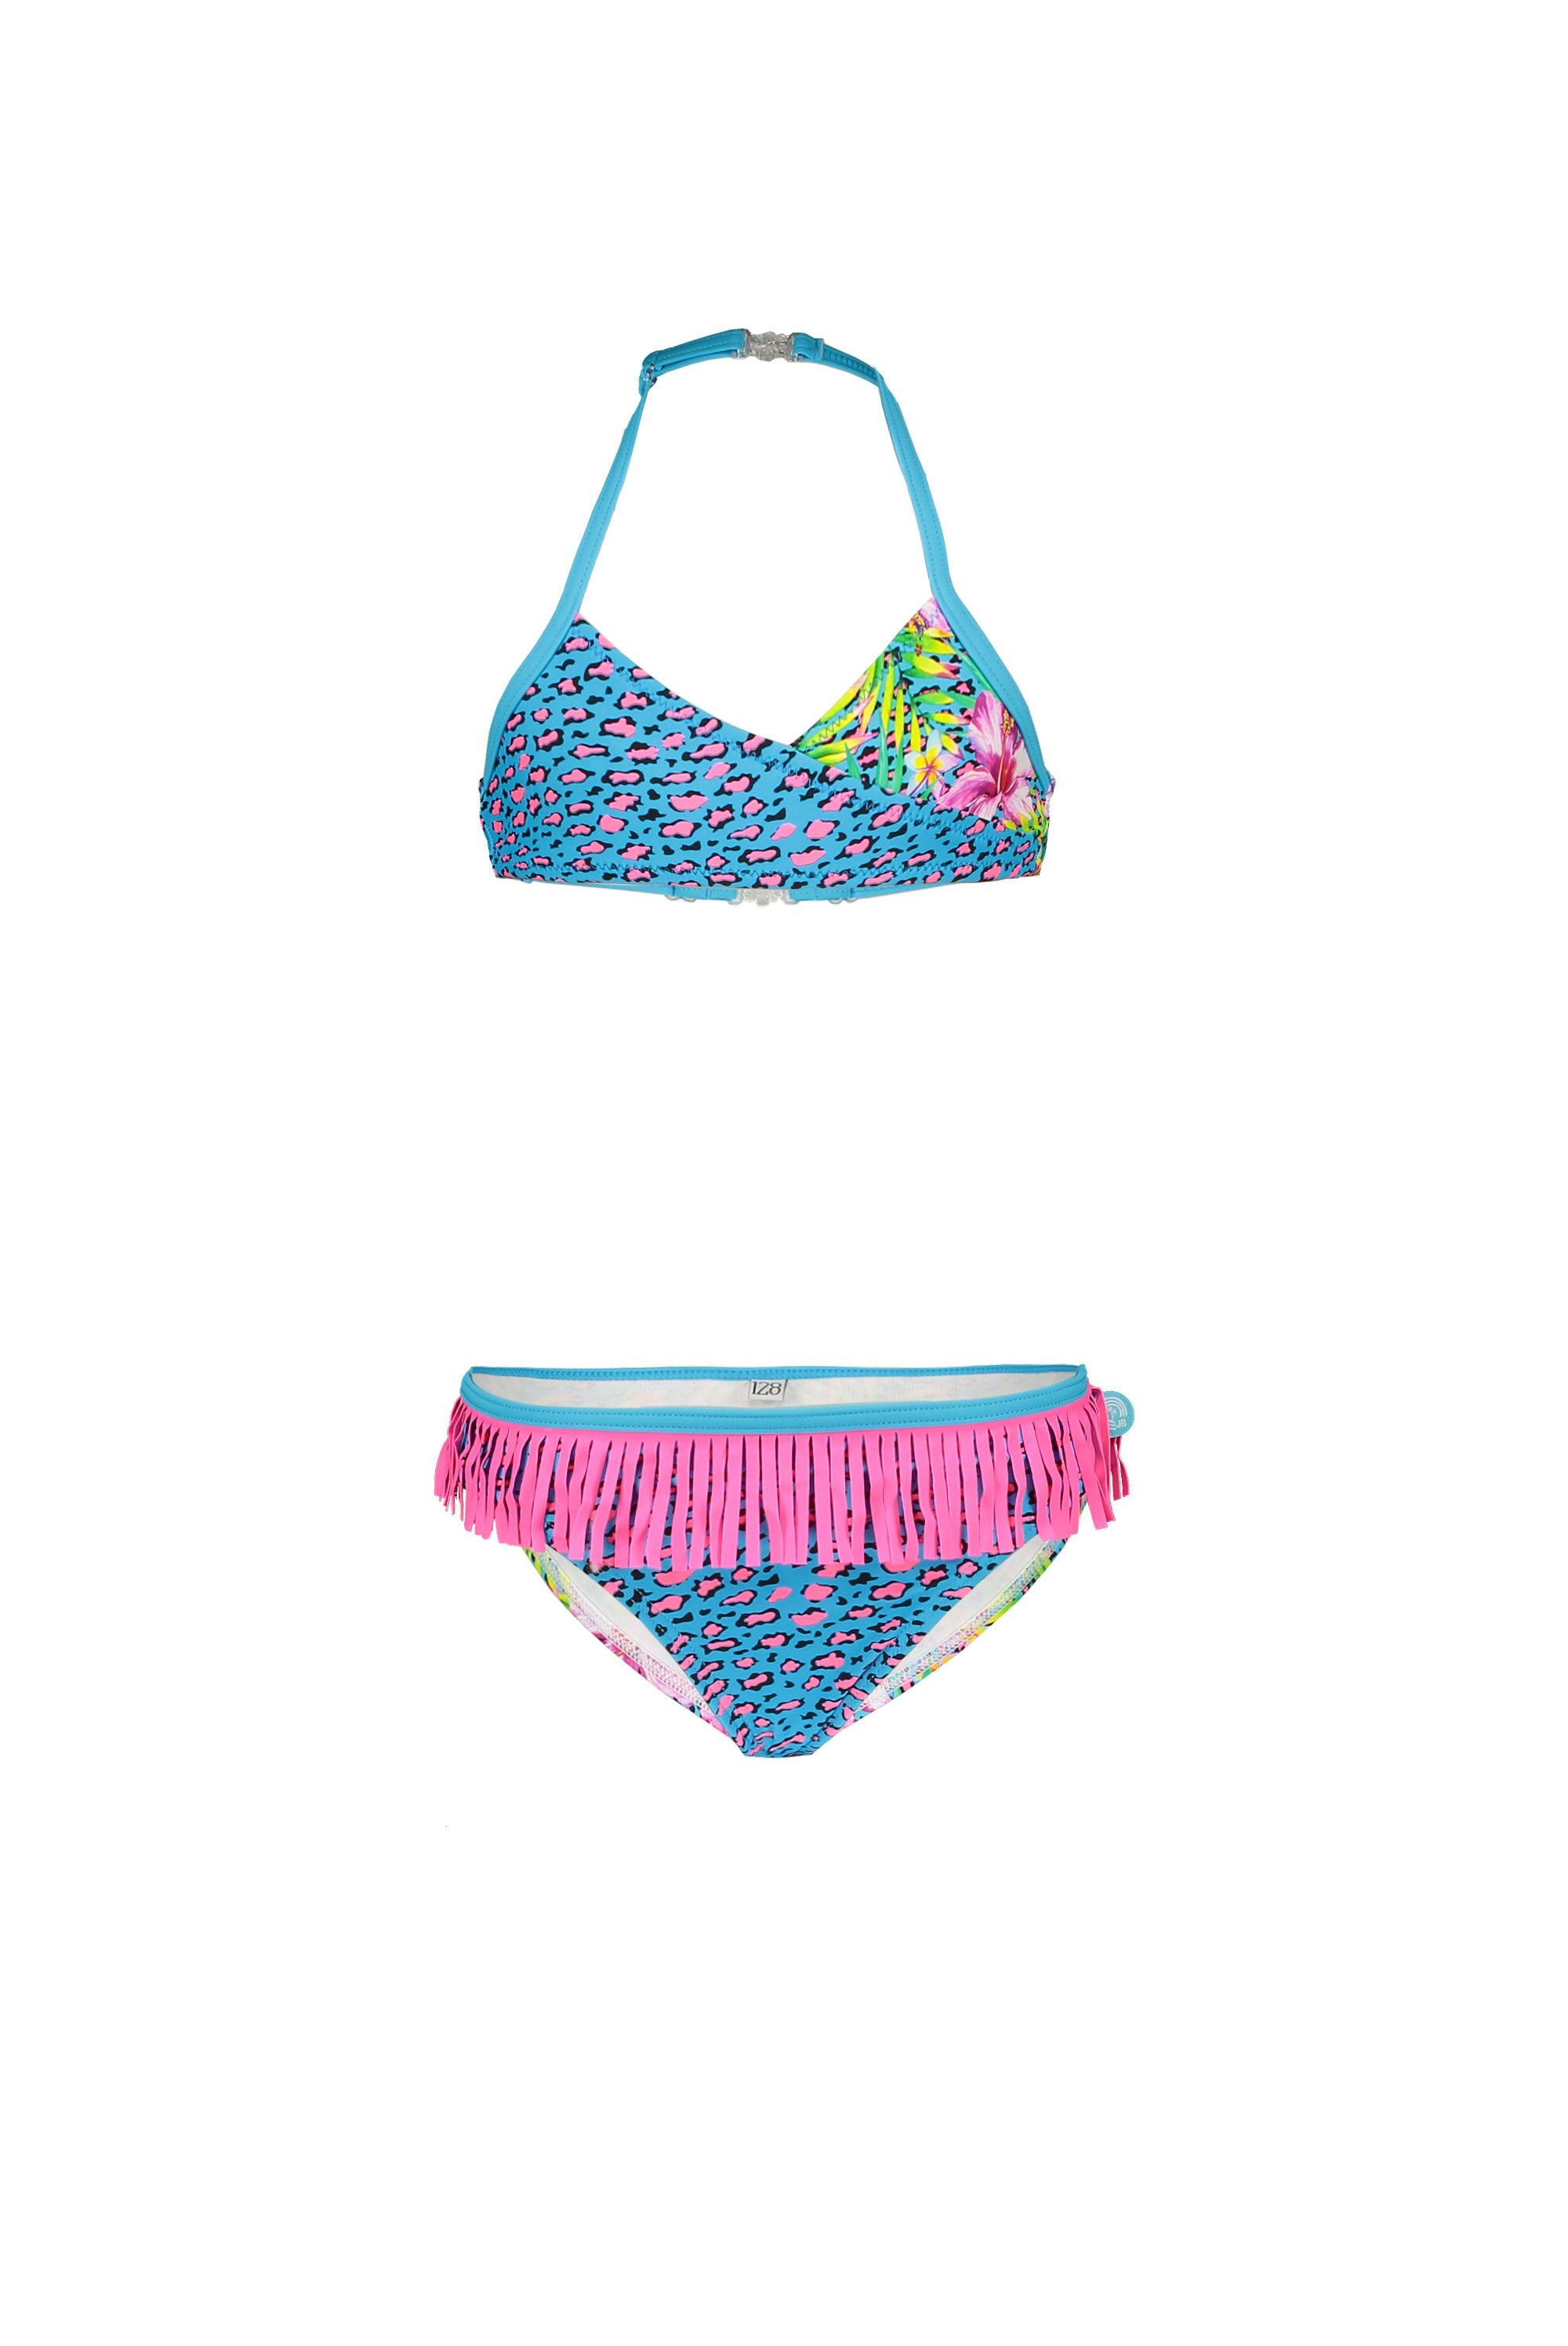 Meisjes Girls wrap bikini with ao van Just Beach in de kleur Tropical in maat 140.